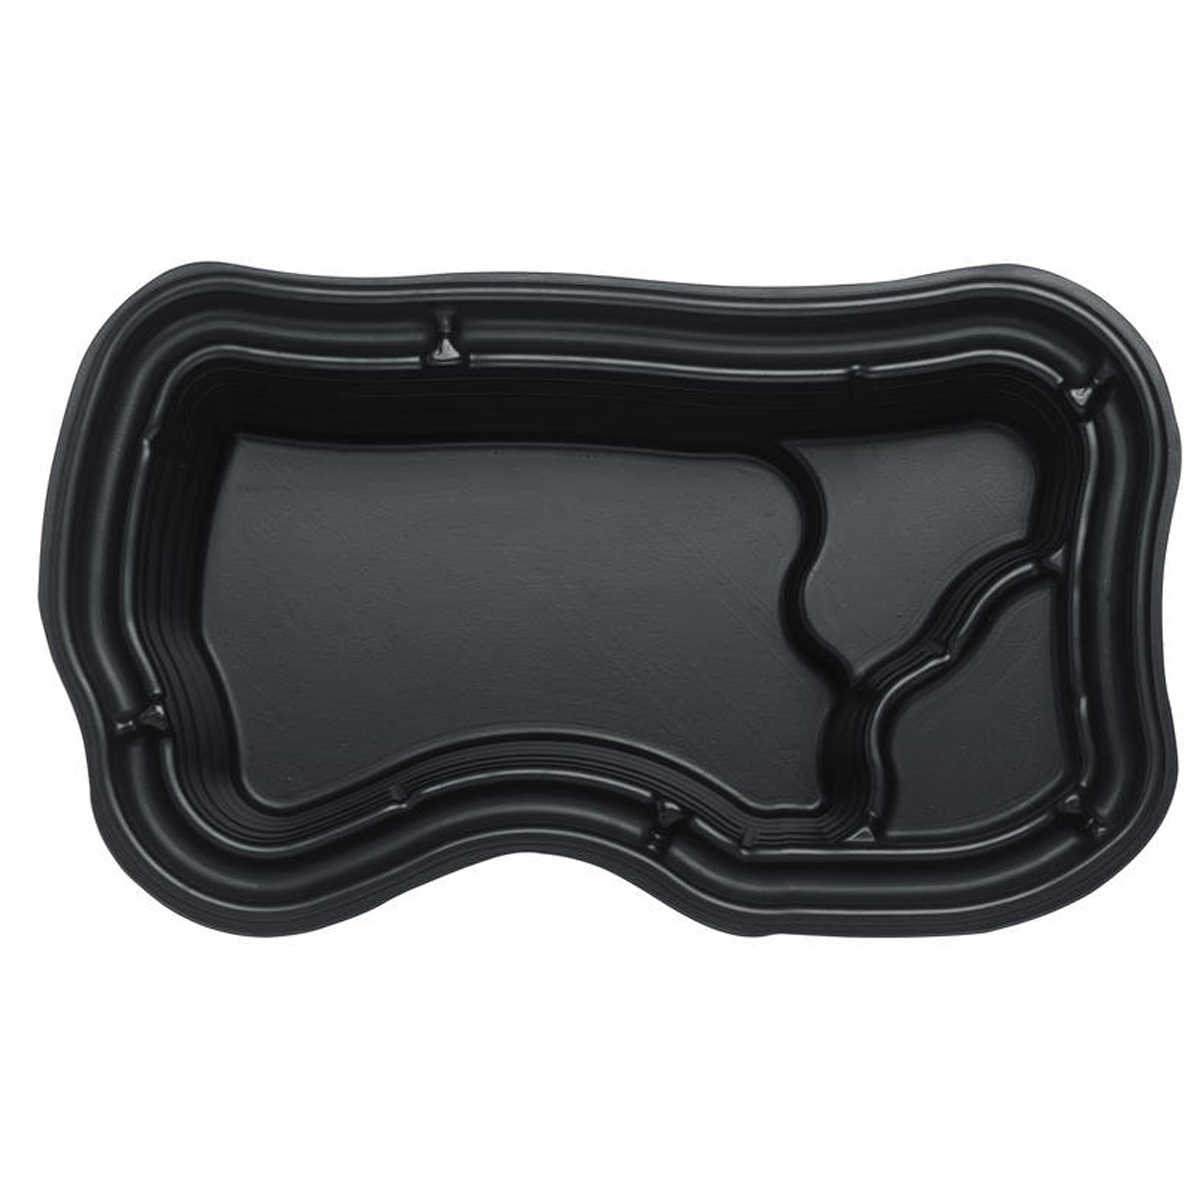 OASE Bâche de bassin en PVC AlfaFol noir Ep. 0,5 mm, largeur 2 m